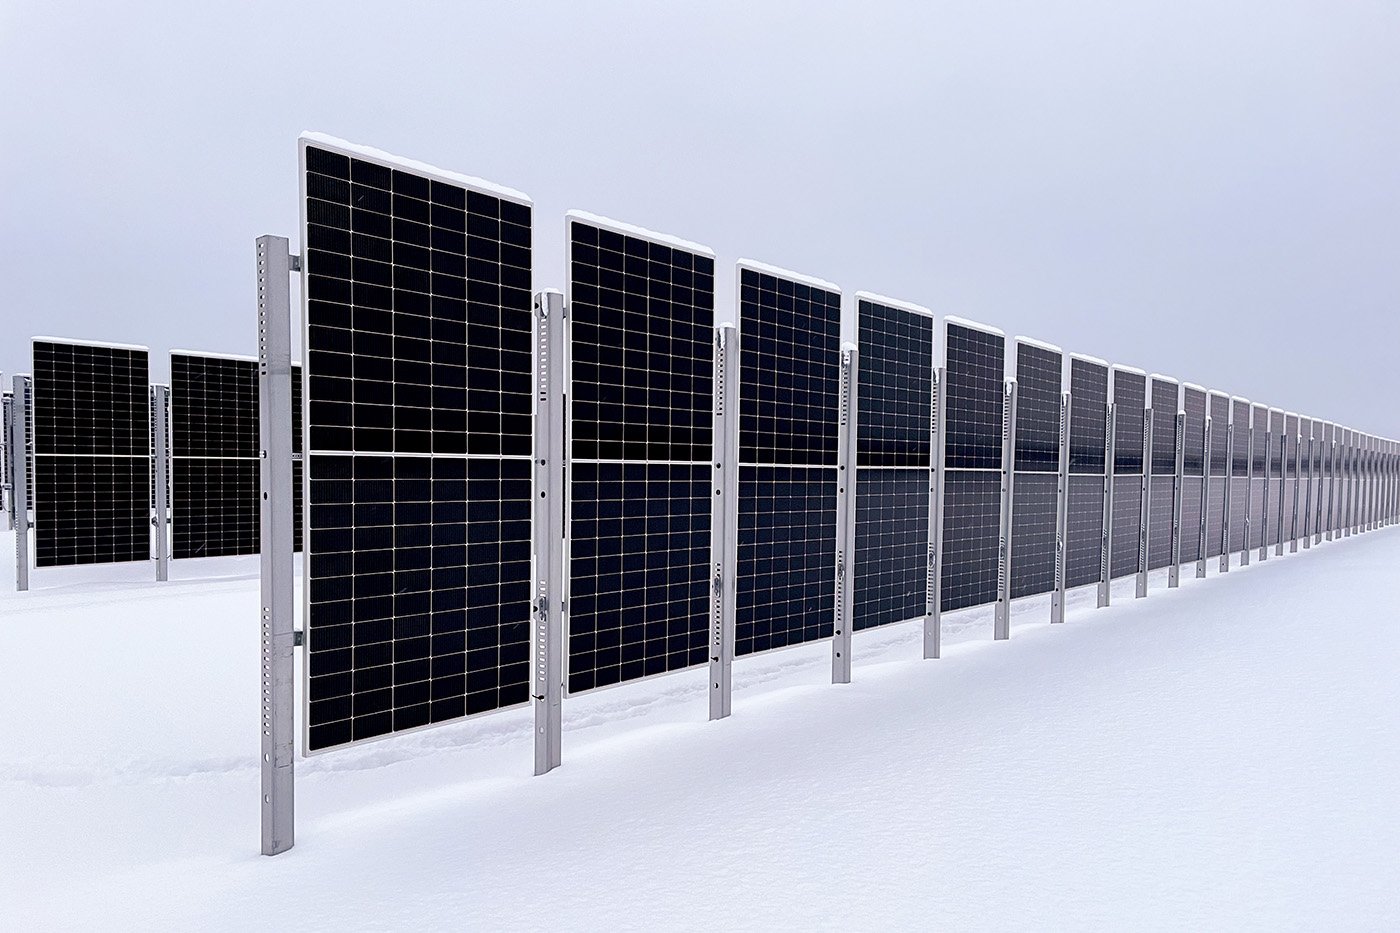 Den vertikala konstruktionen ger en annorlunda produktionskurva jämfört med traditionella solcellspaneler.